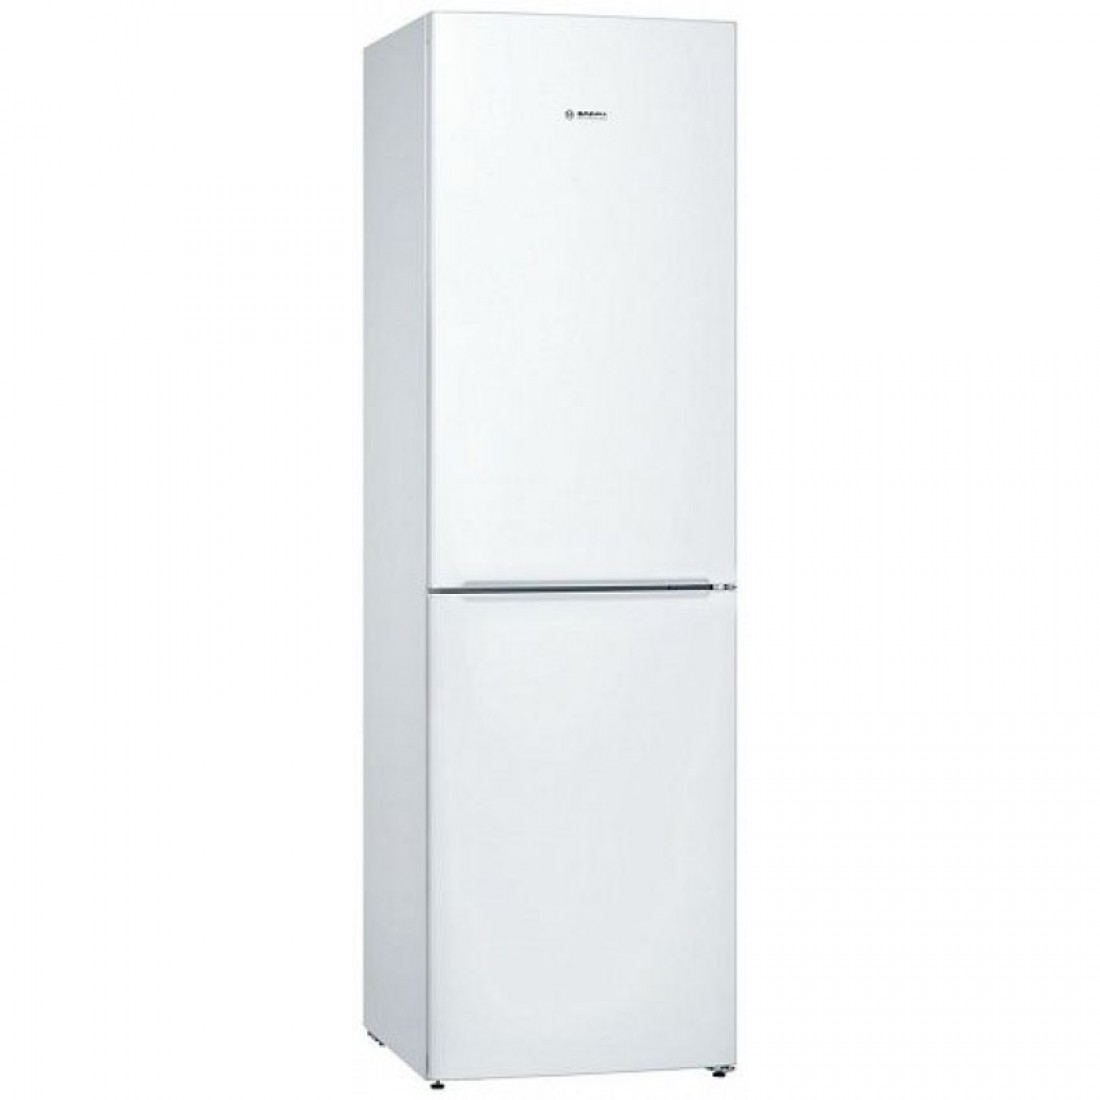 Купить холодильник в сочи. Bosch kgv39xw22r. Холодильник Bosch kgv36nw1ar. Холодильник бош kgs36xw20r. Холодильник Bosch KGS 36xw20r.